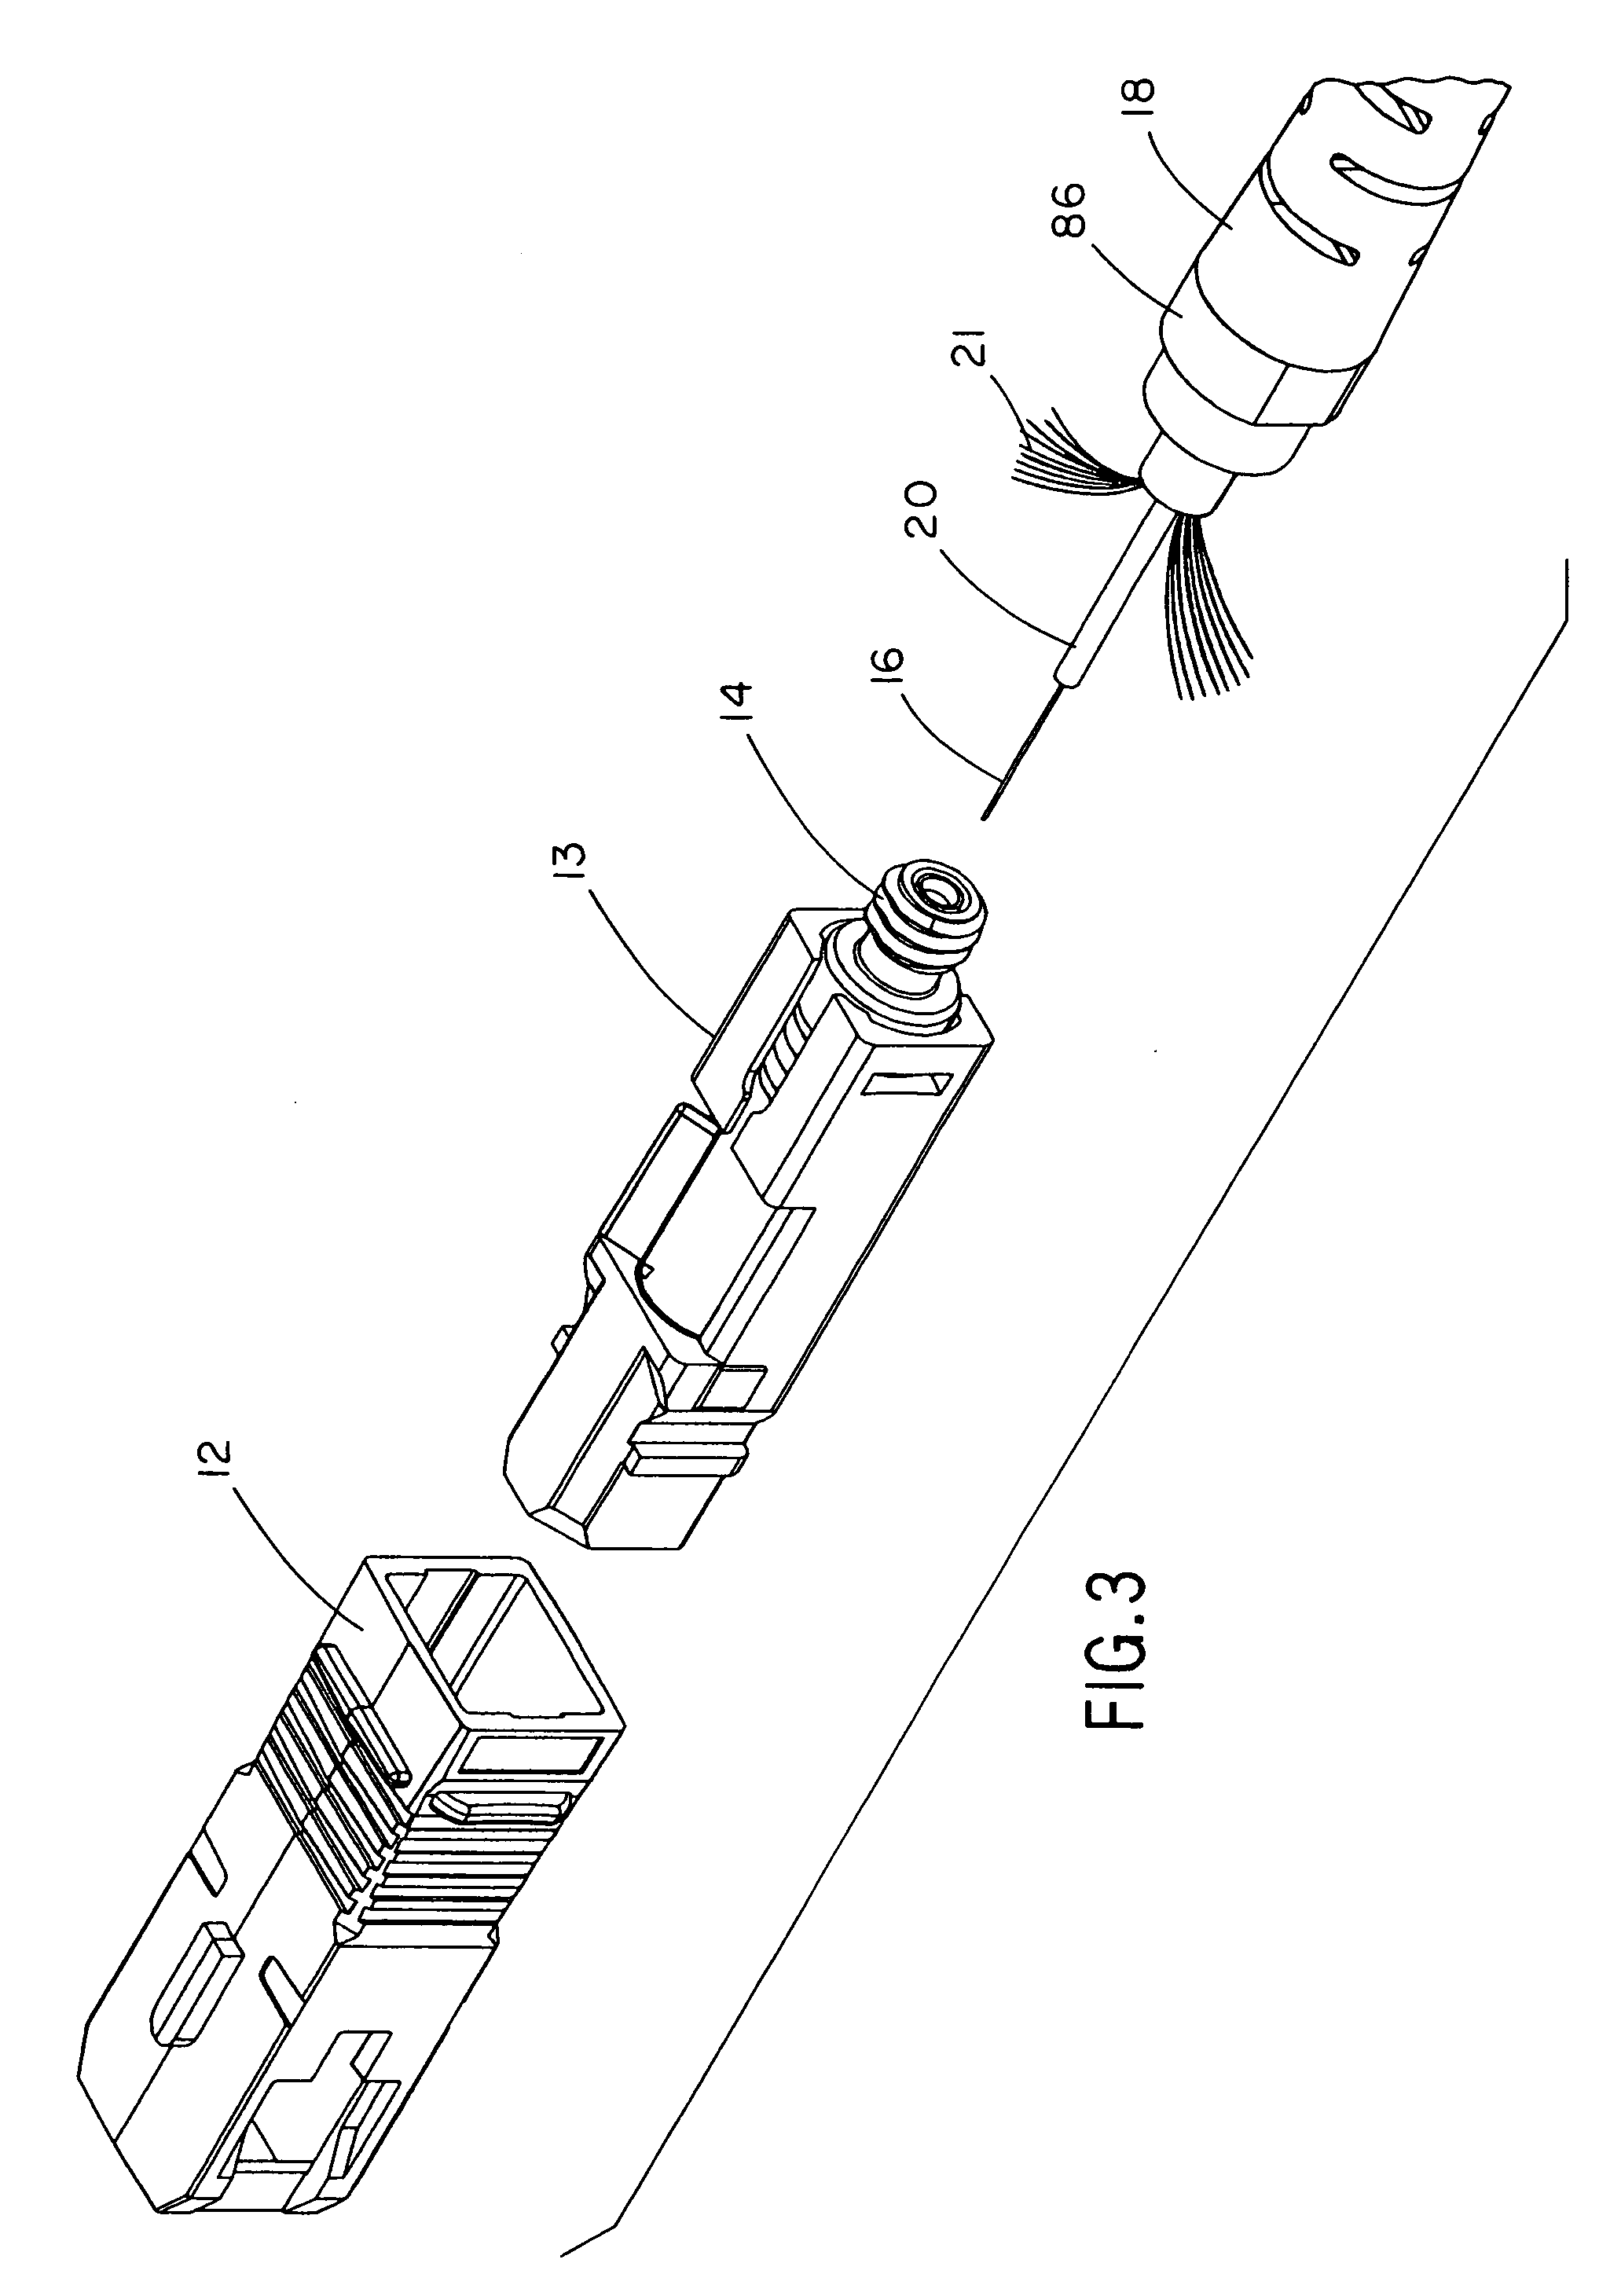 Reversible fiber optic stub fiber connector